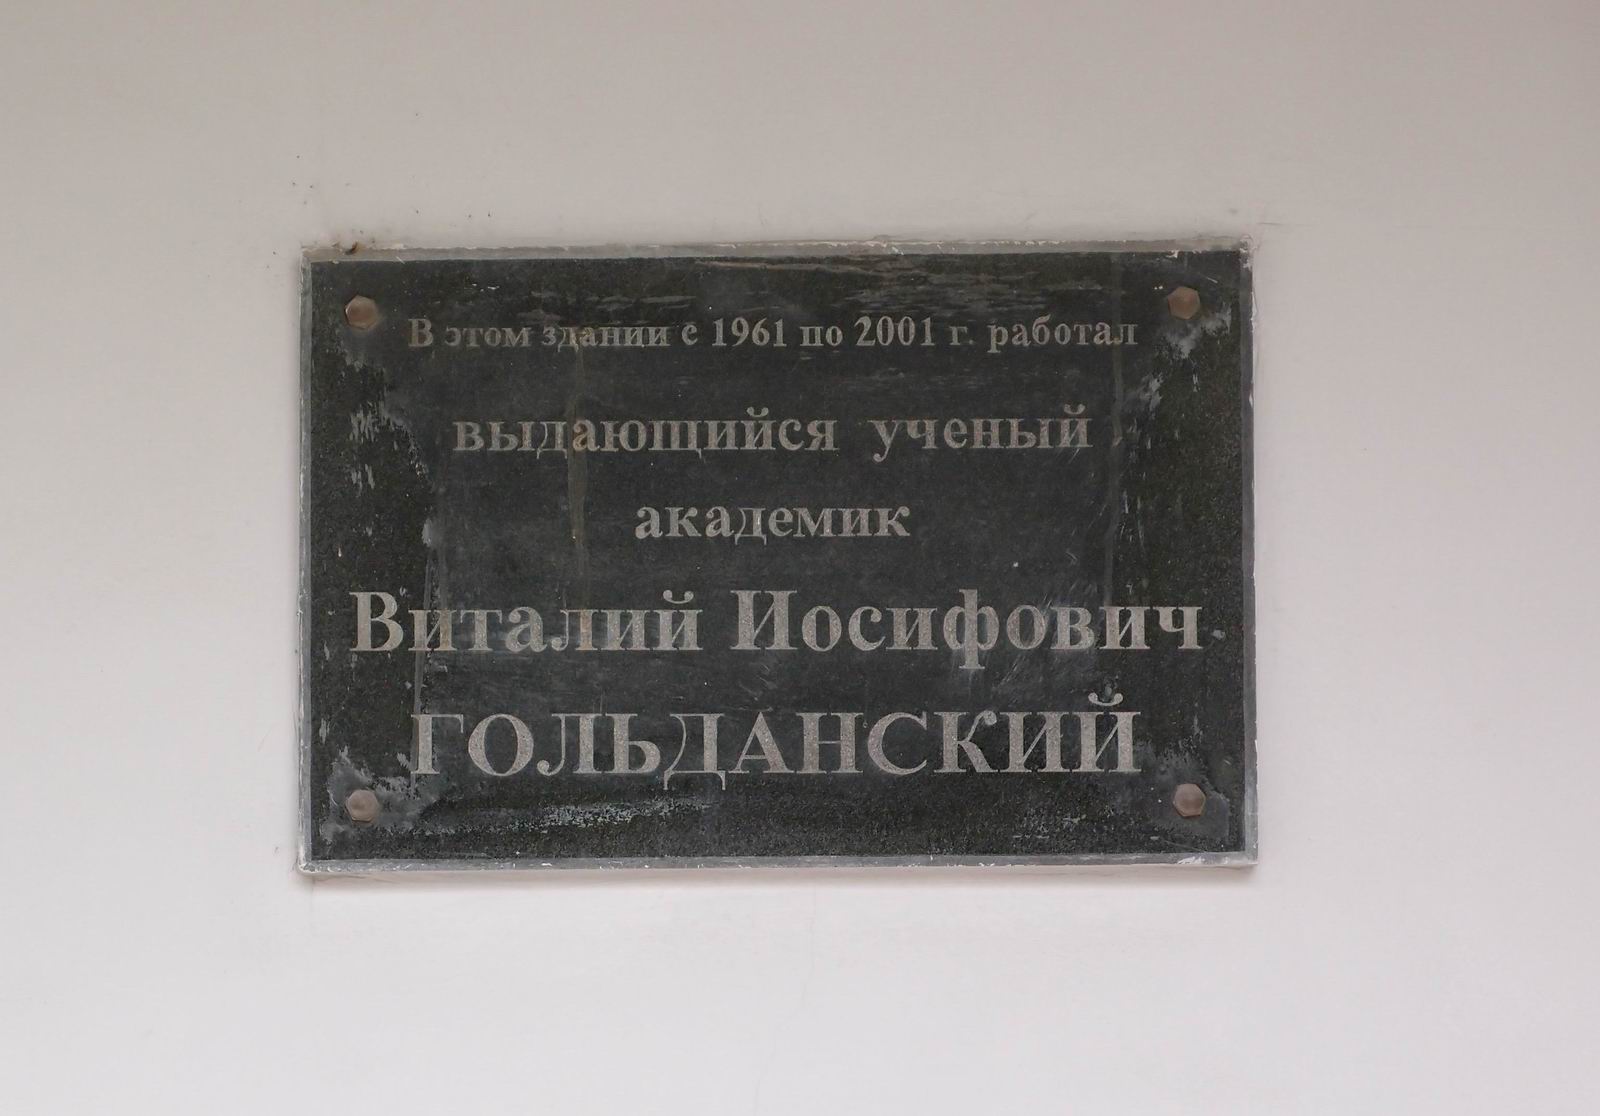 Мемориальная доска Гольданскому В.И. (1923-2001), на Ленинском проспекте, дом 38, корпус 2.